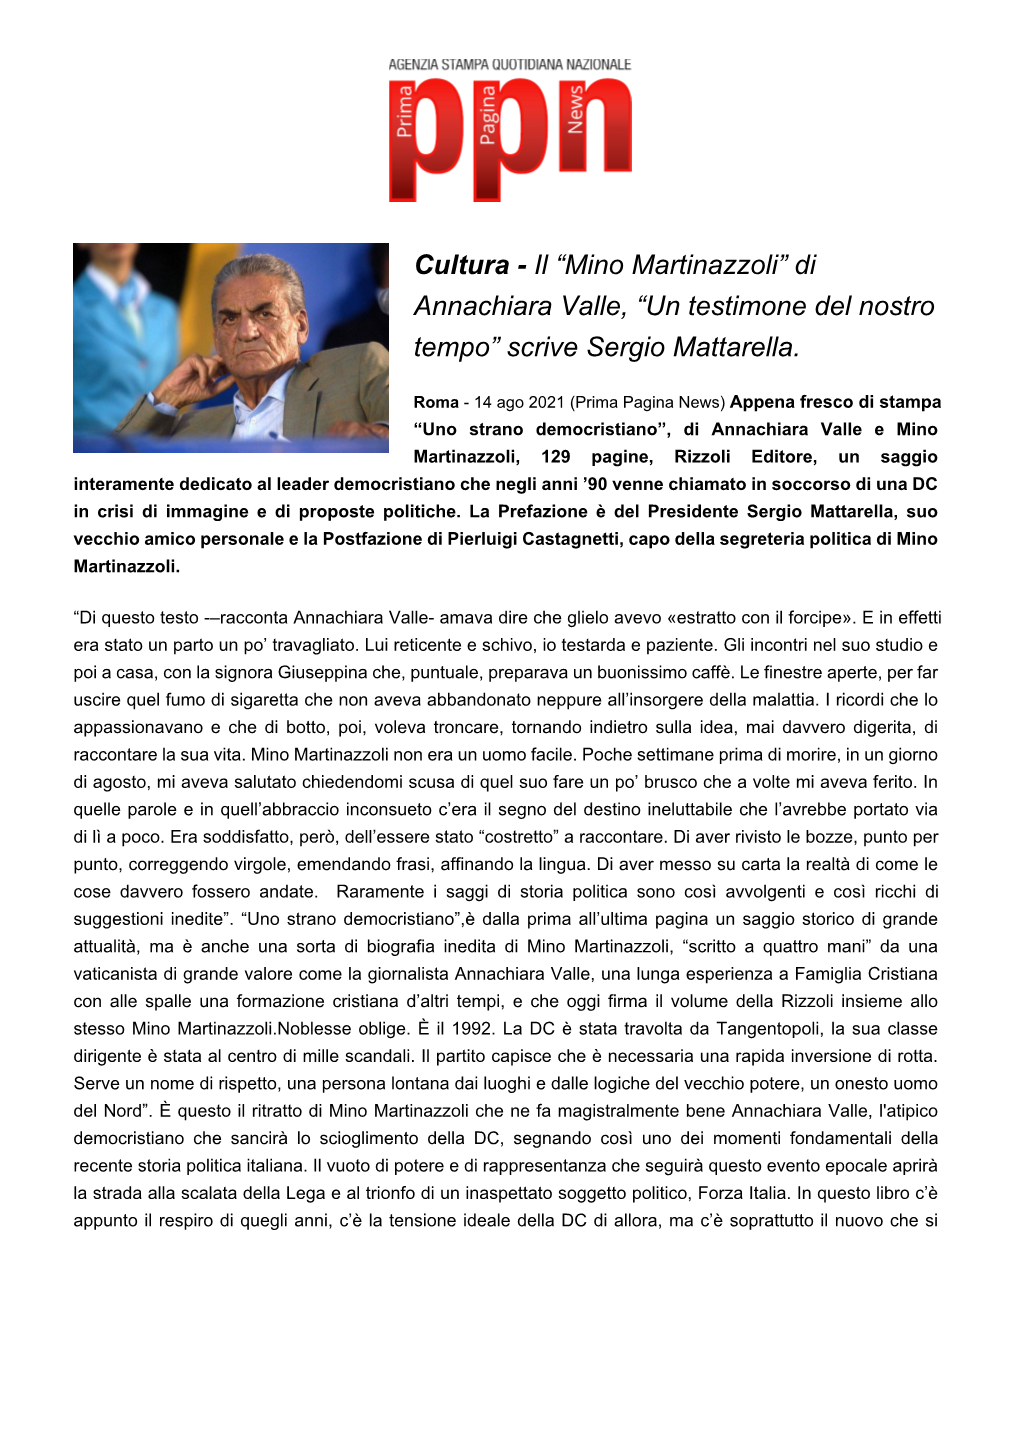 Il “Mino Martinazzoli” Di Annachiara Valle, “Un Testimone Del Nostro Tempo” Scrive Sergio Mattarella